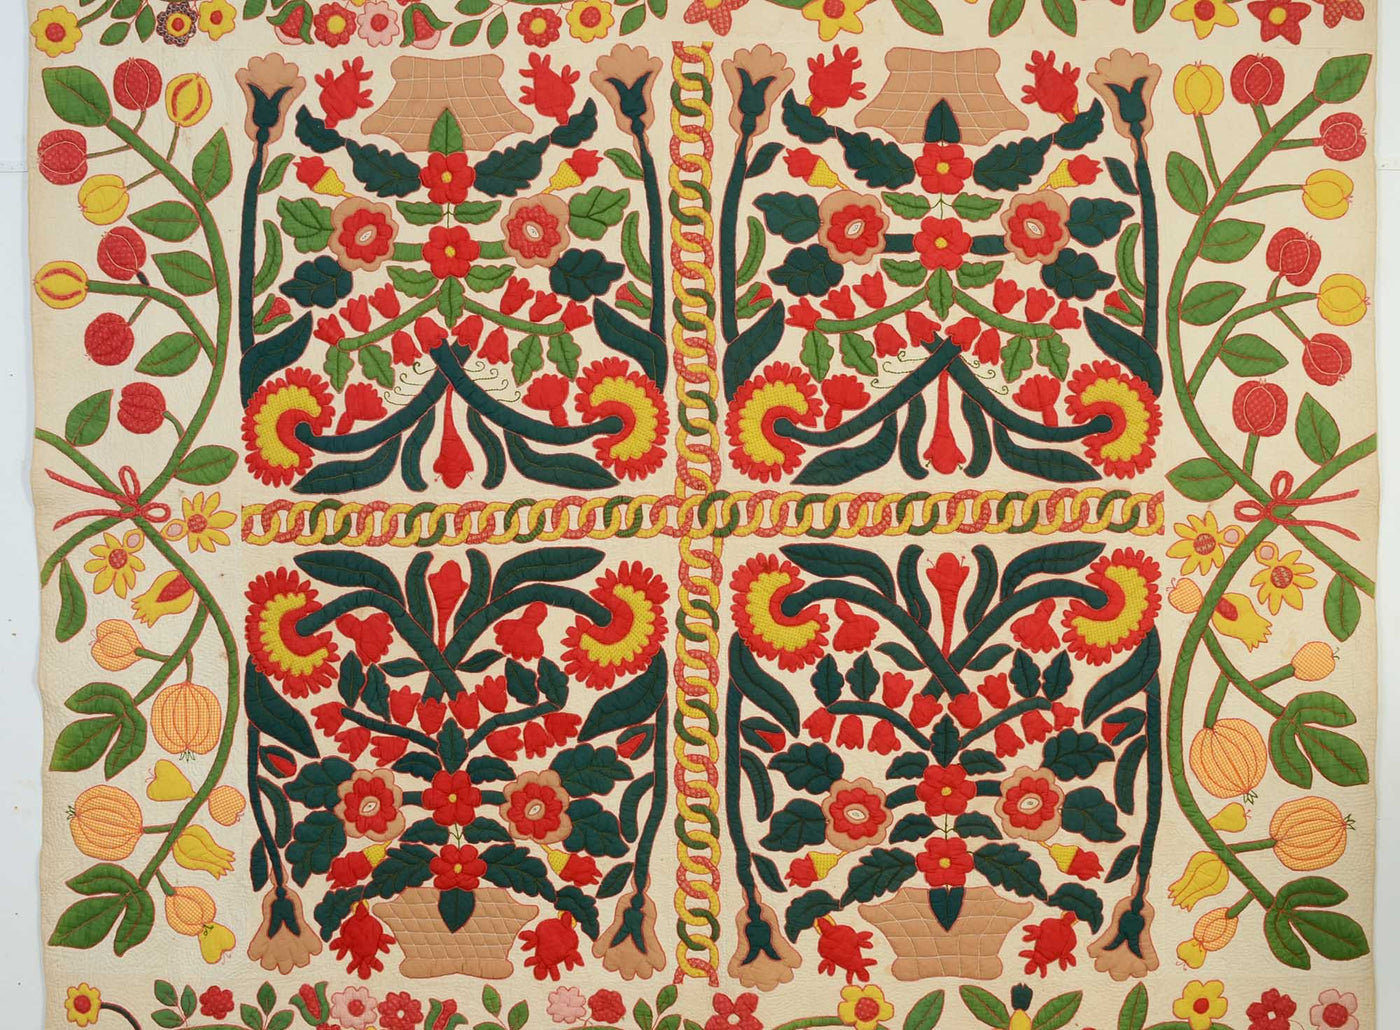 pots-of-flowers-stuffed-applique-quilt-1400548-detail-1